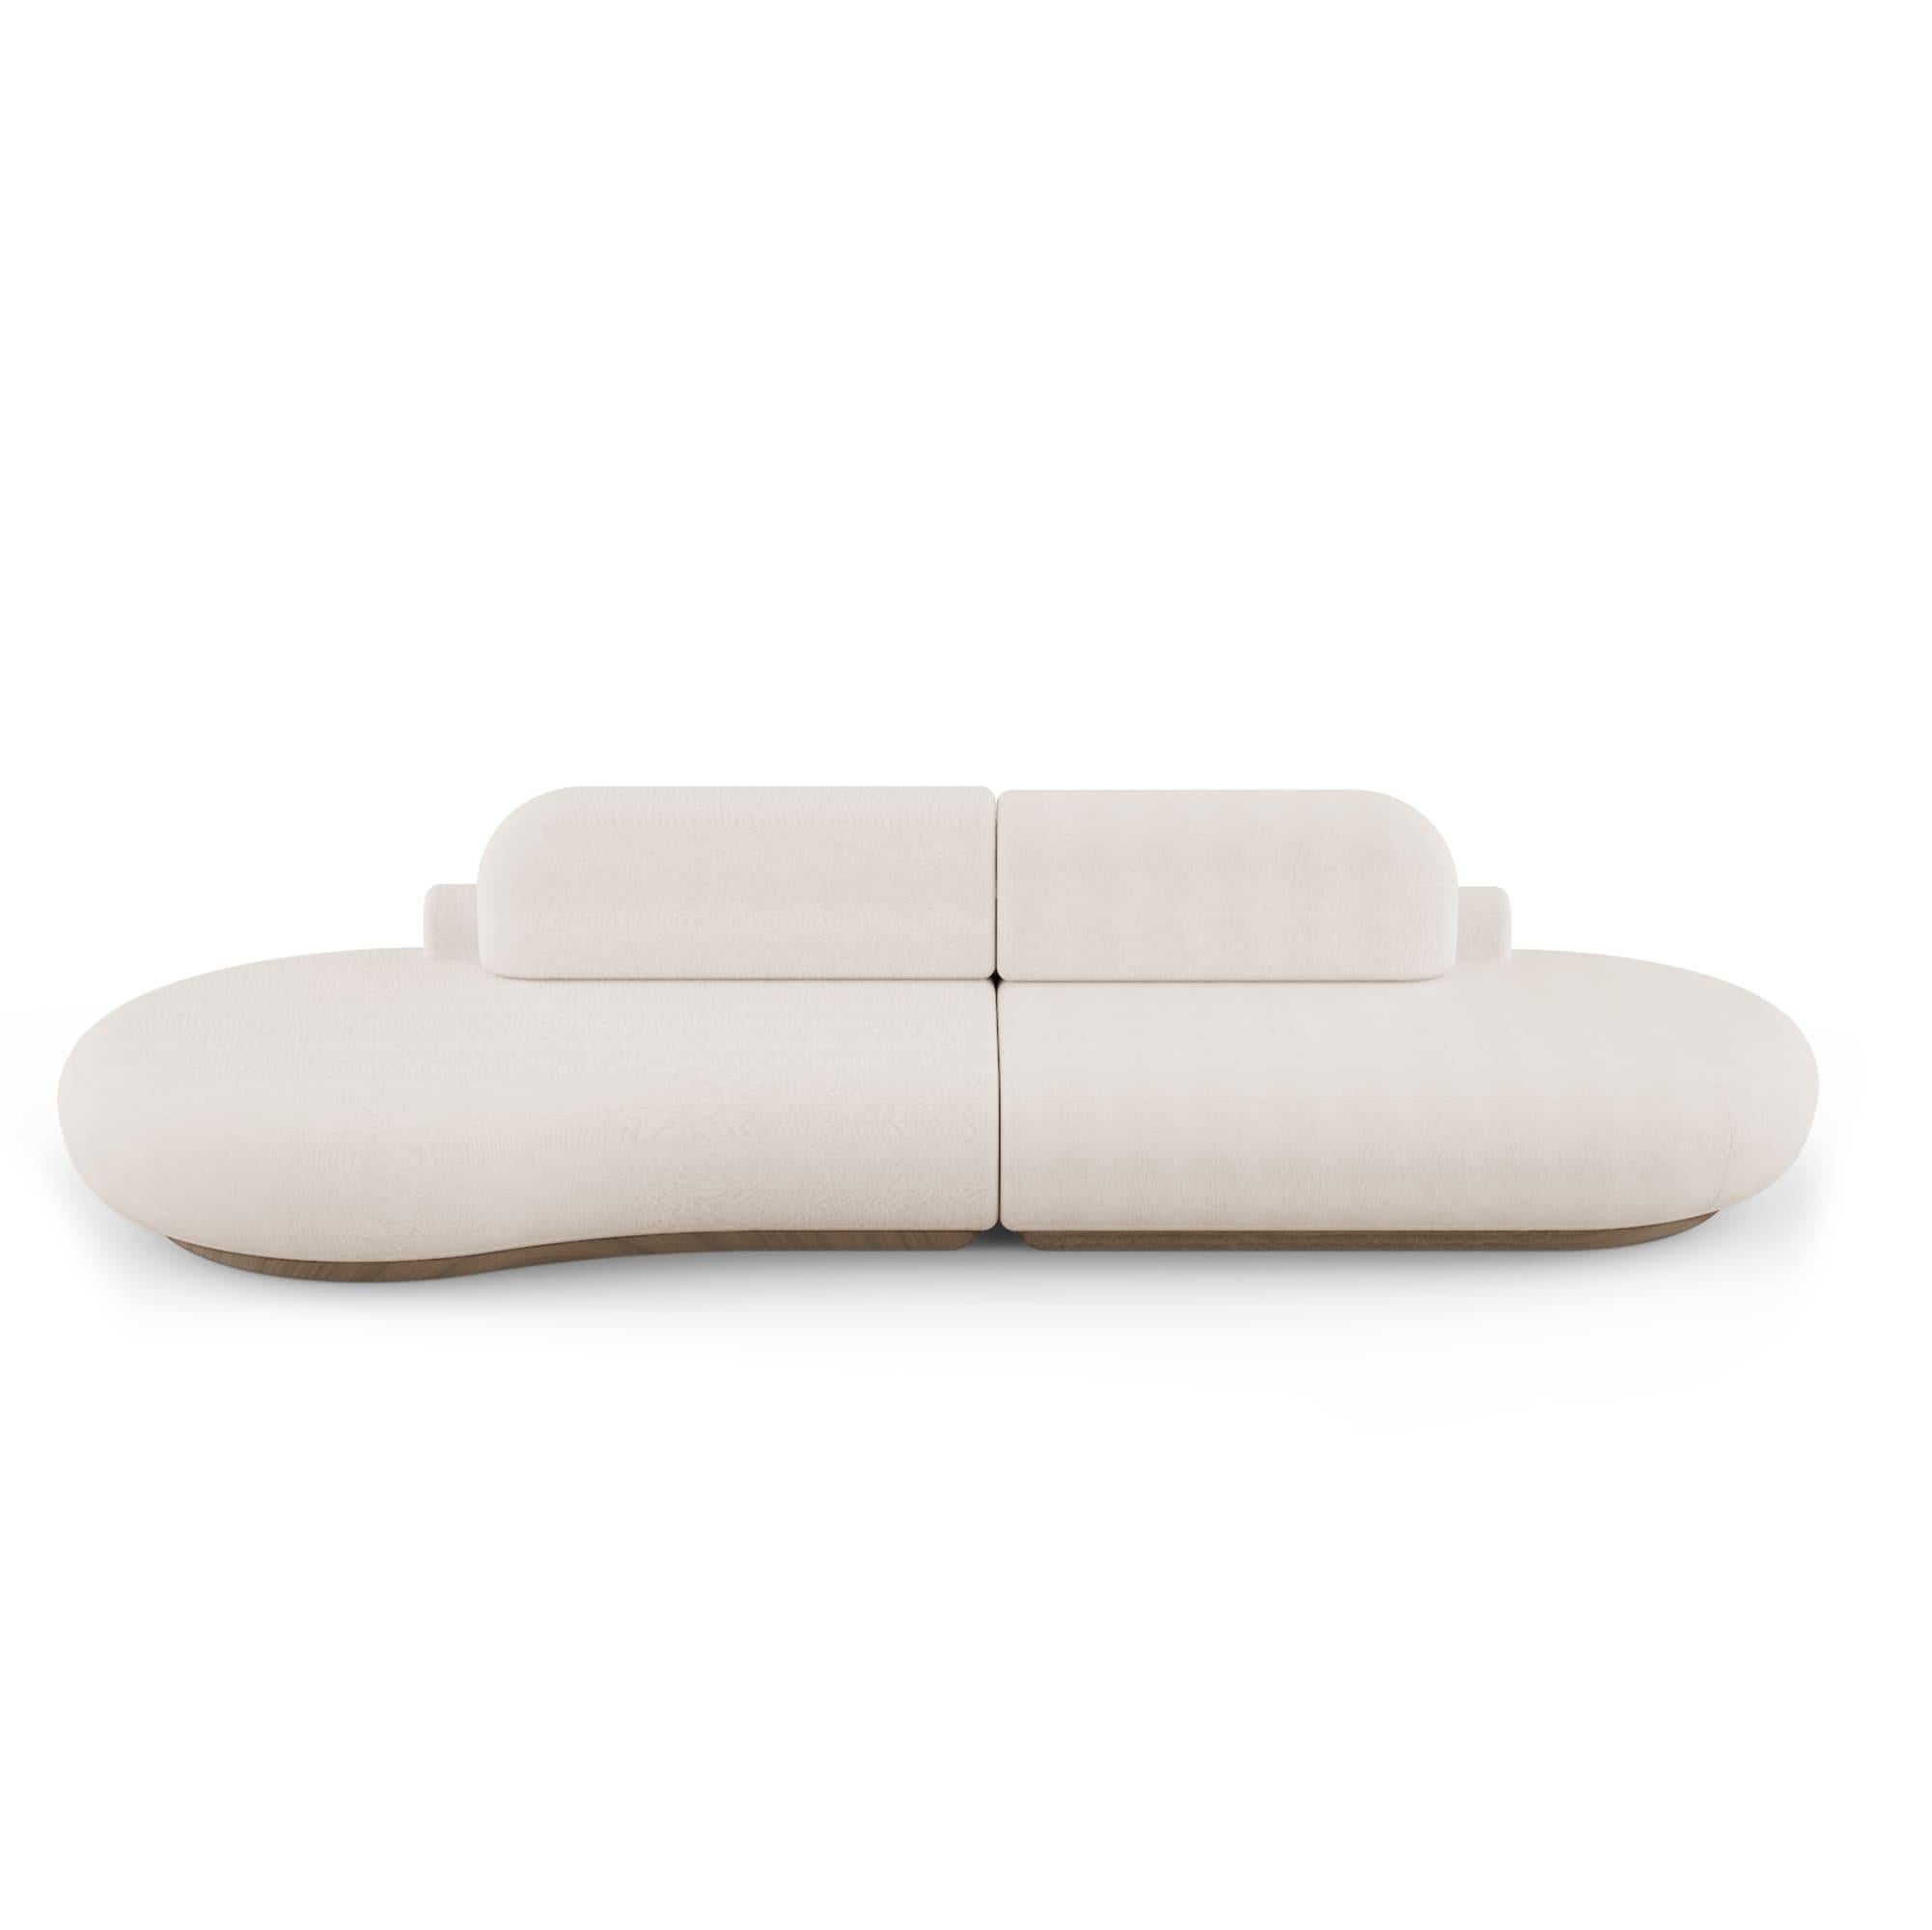 Contemporary Naked Sofa by DOOQ